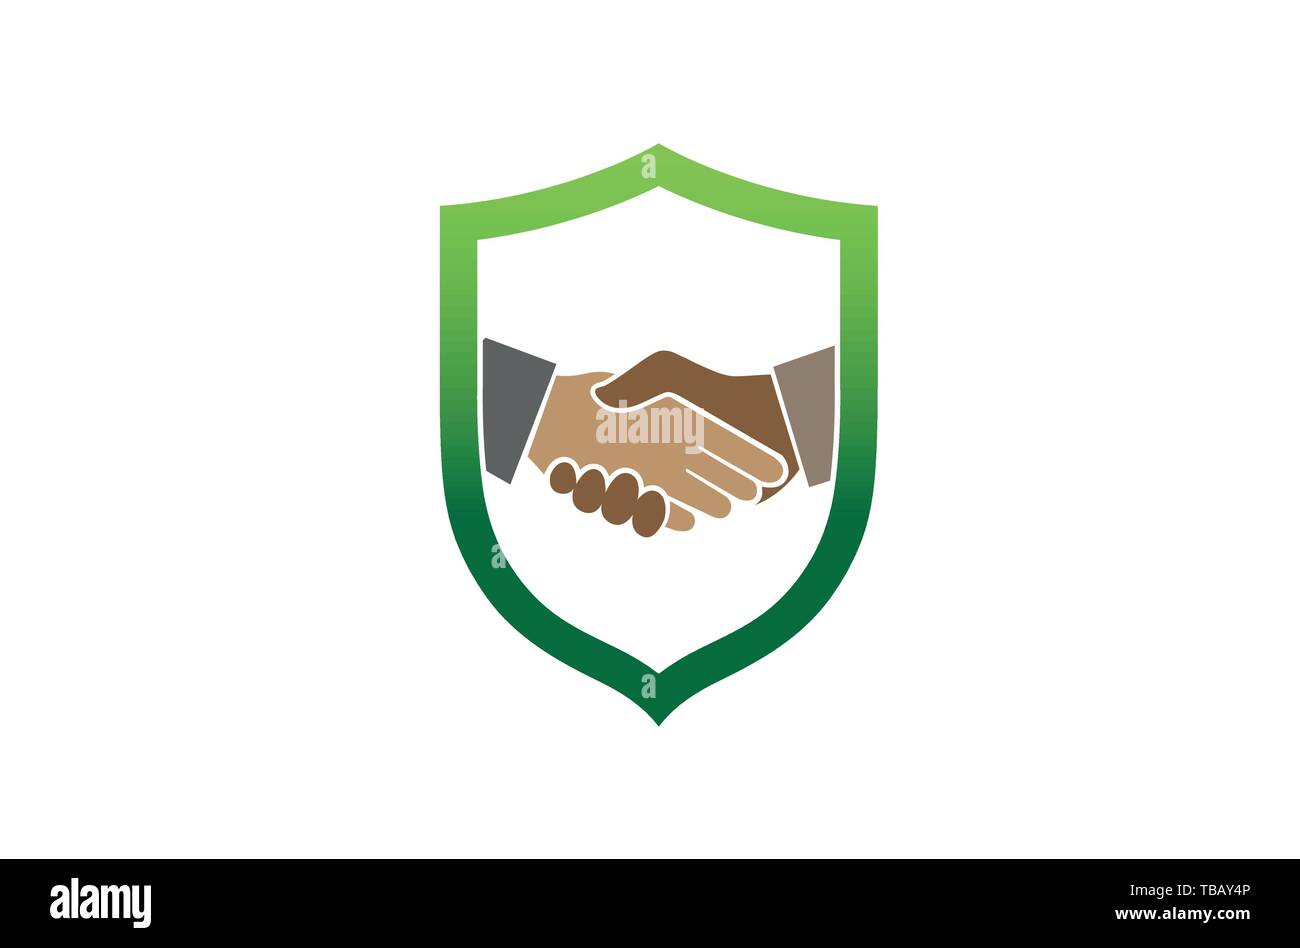 Kreative abstrakte Handshake Shield Logo Design Symbol Vektor Illustration Stock Vektor